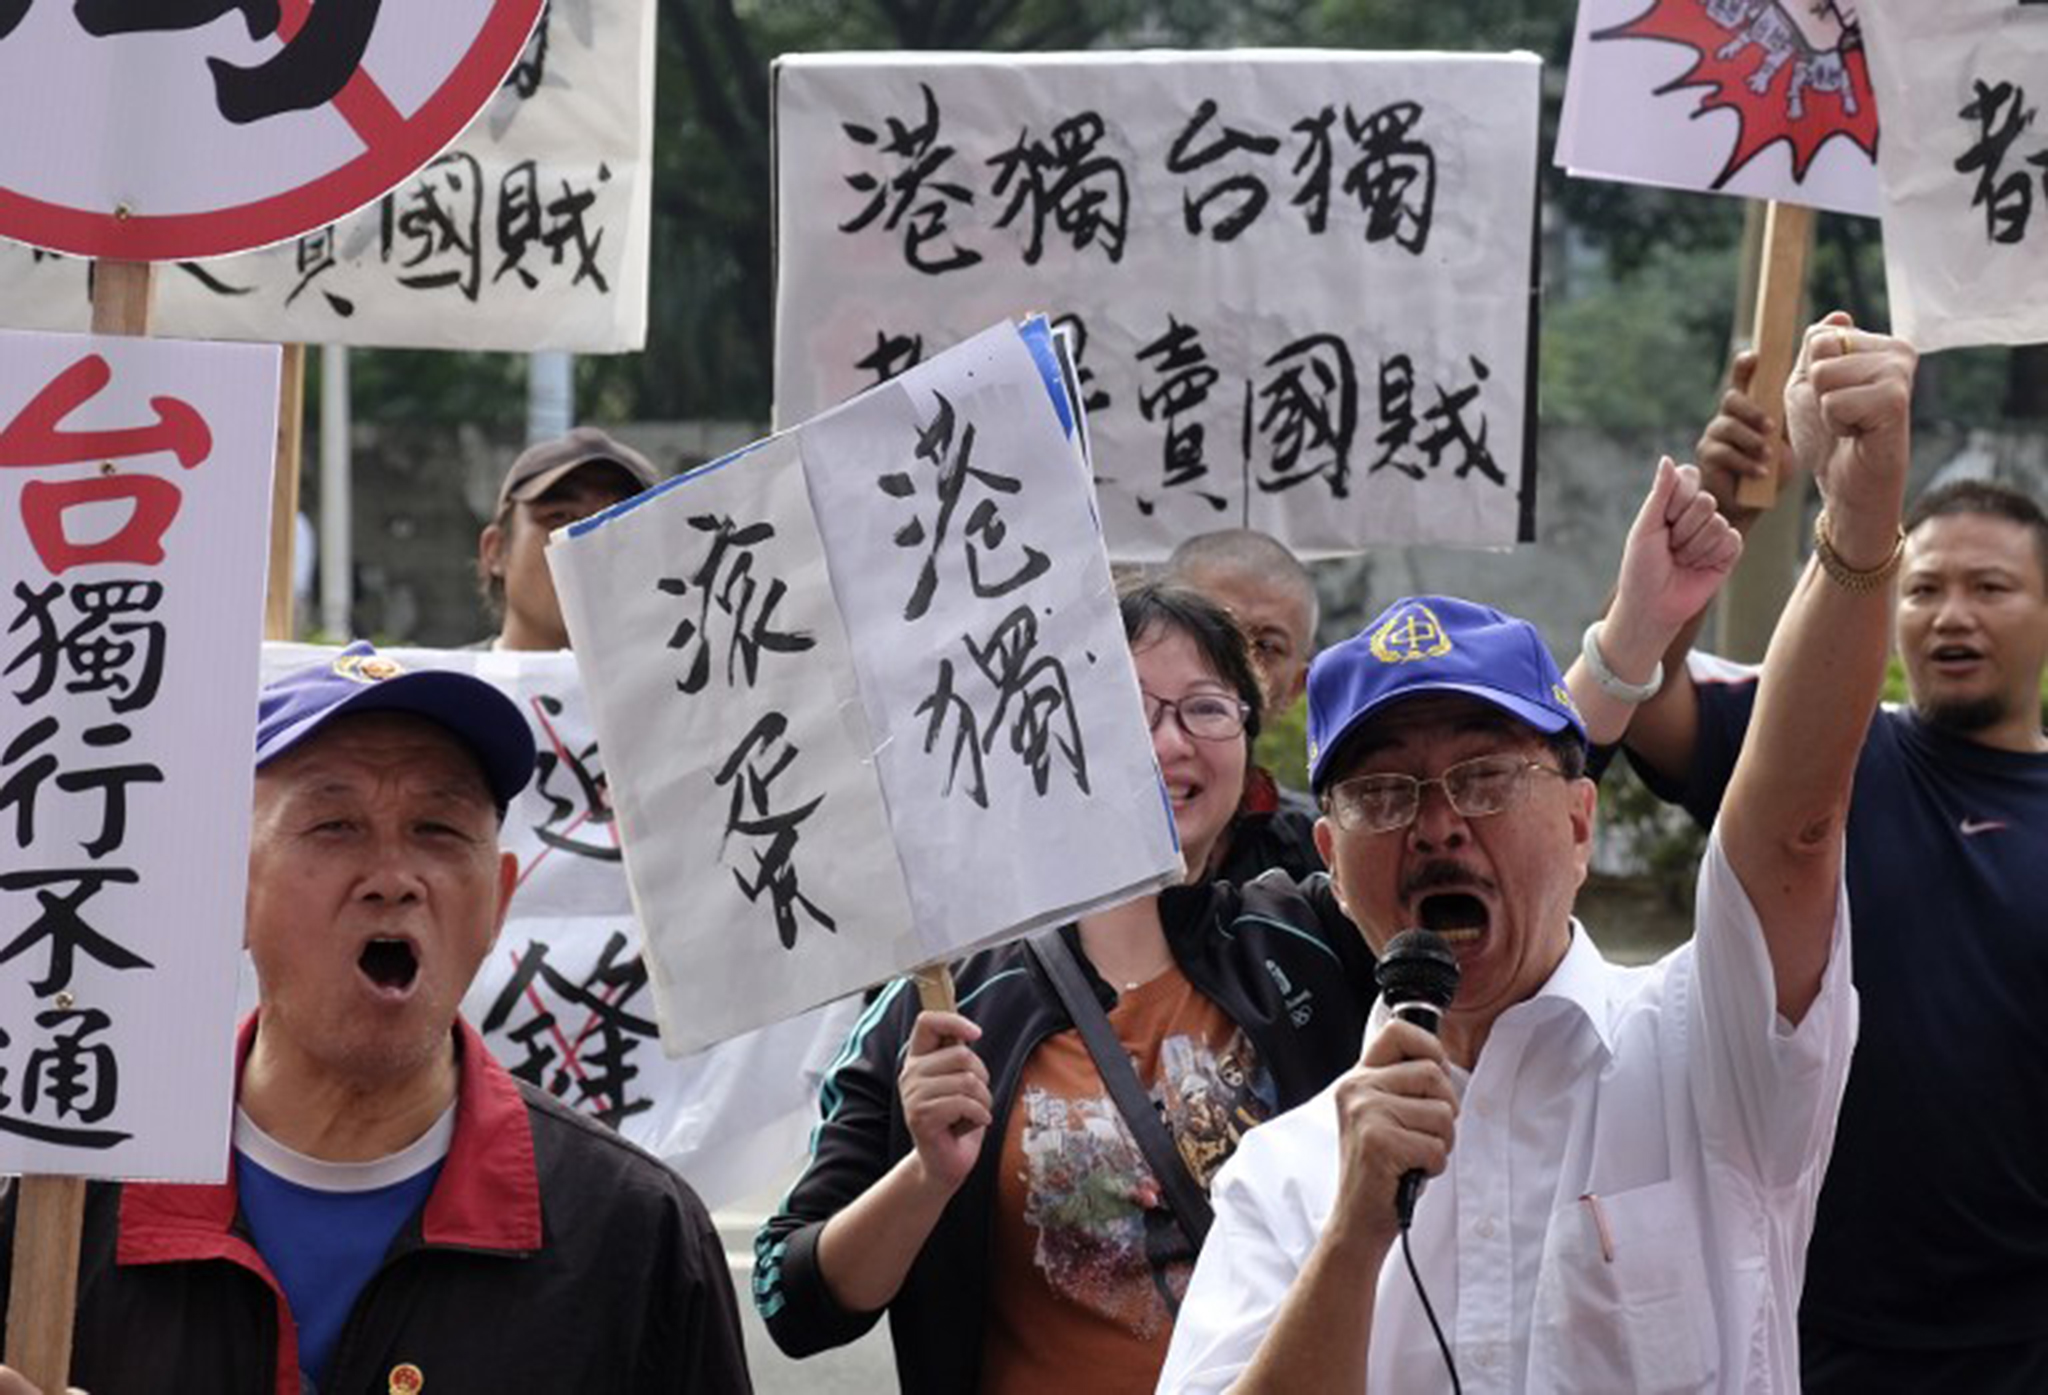 Taiwan : Pequim expressa oposição às actividades secessionistas